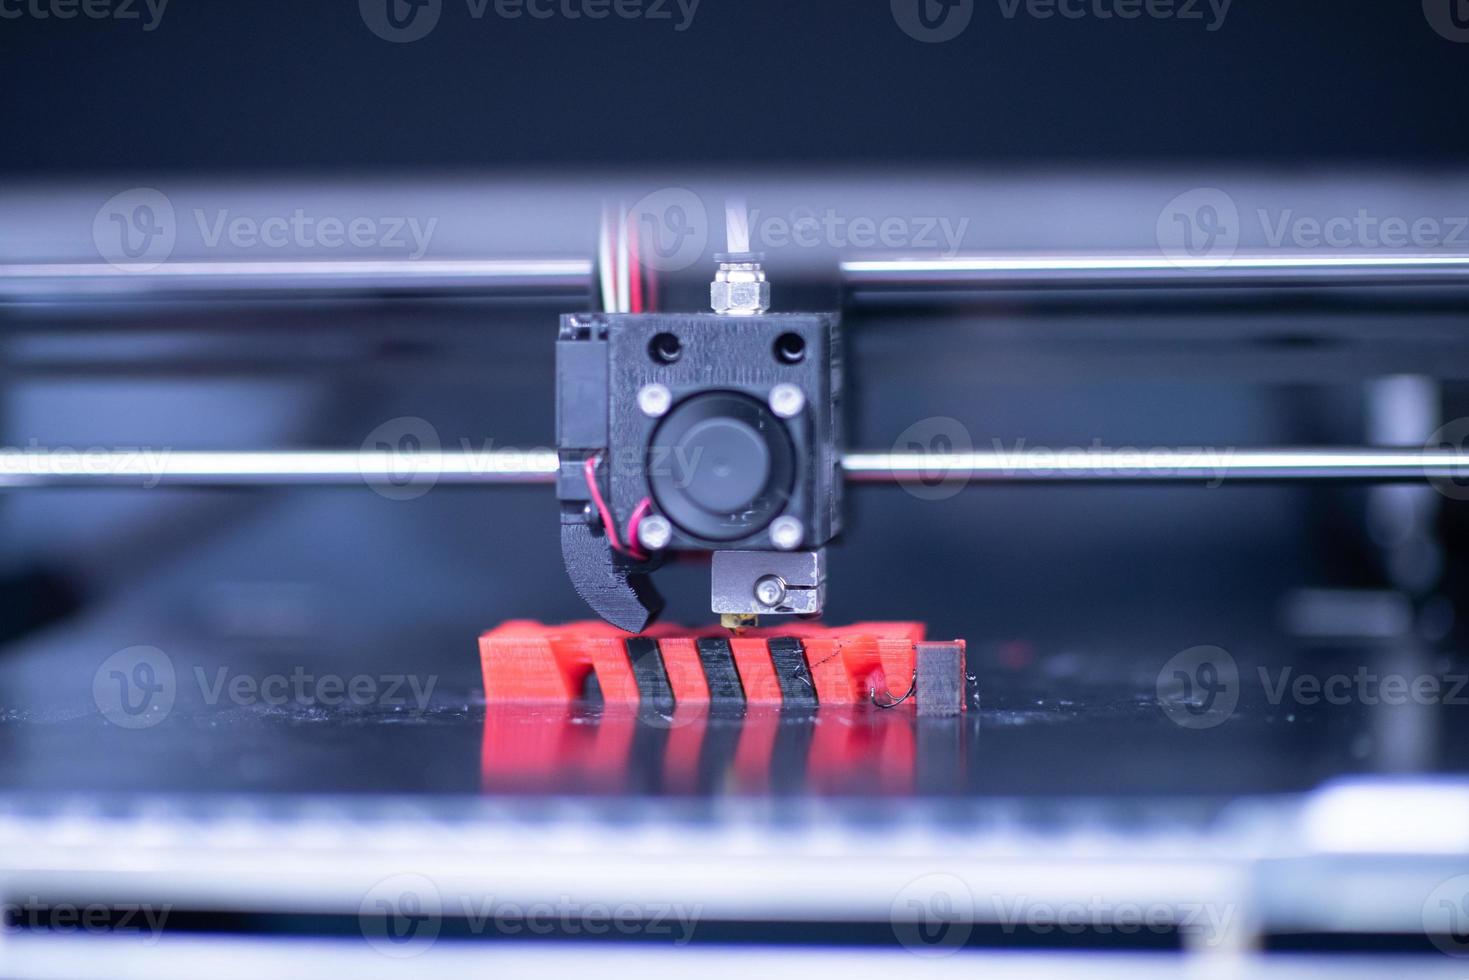 3D printer view photo